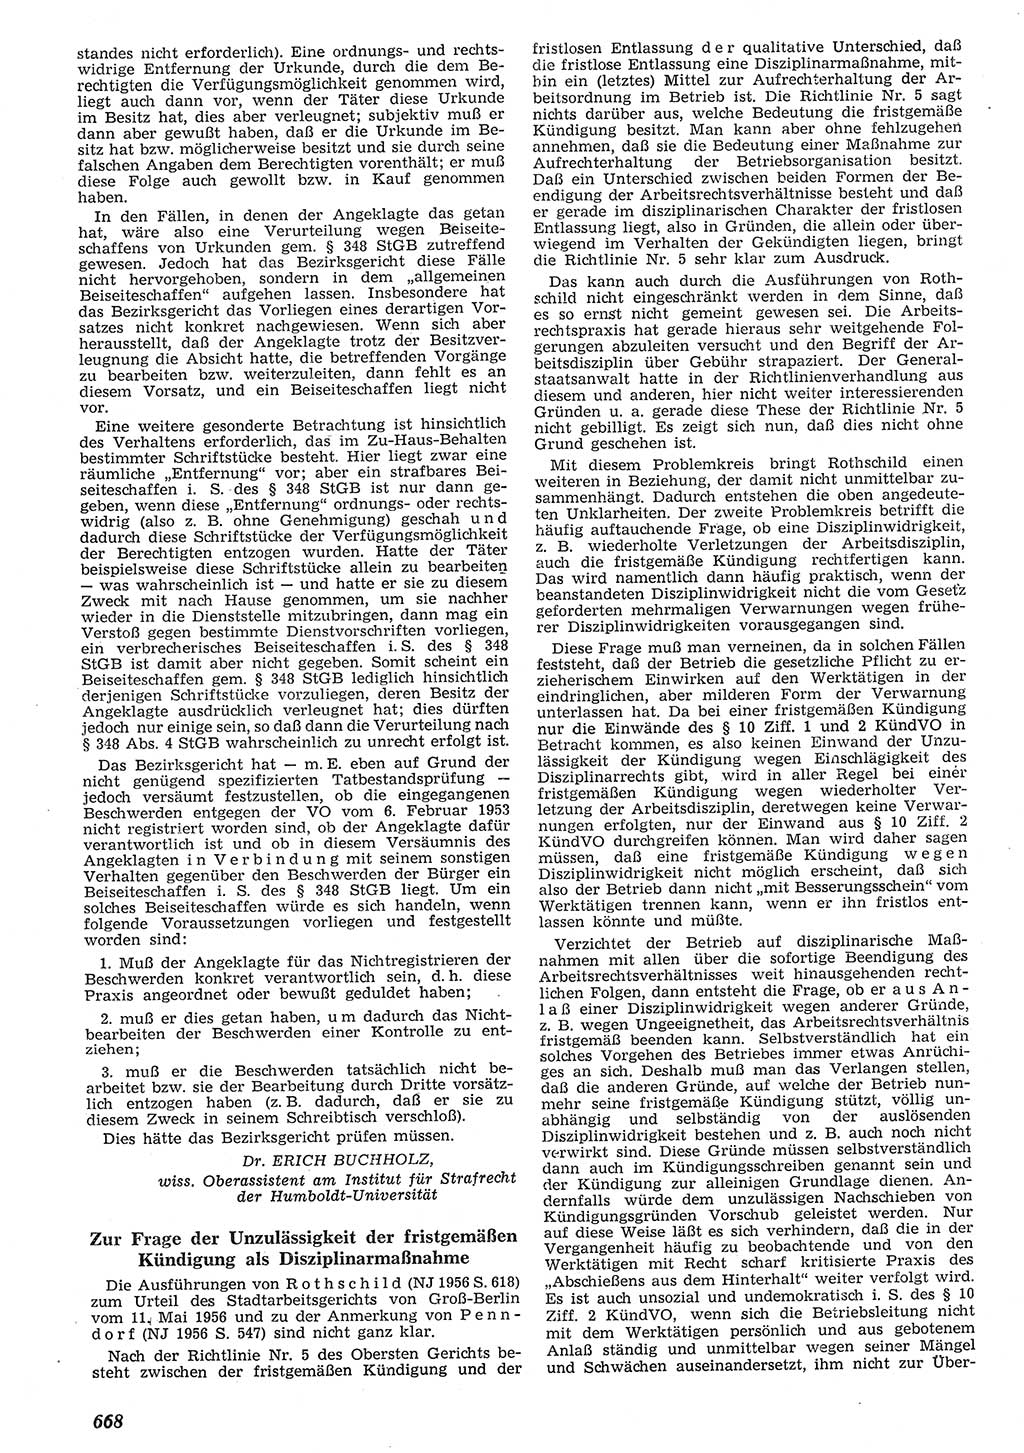 Neue Justiz (NJ), Zeitschrift für Recht und Rechtswissenschaft [Deutsche Demokratische Republik (DDR)], 10. Jahrgang 1956, Seite 668 (NJ DDR 1956, S. 668)